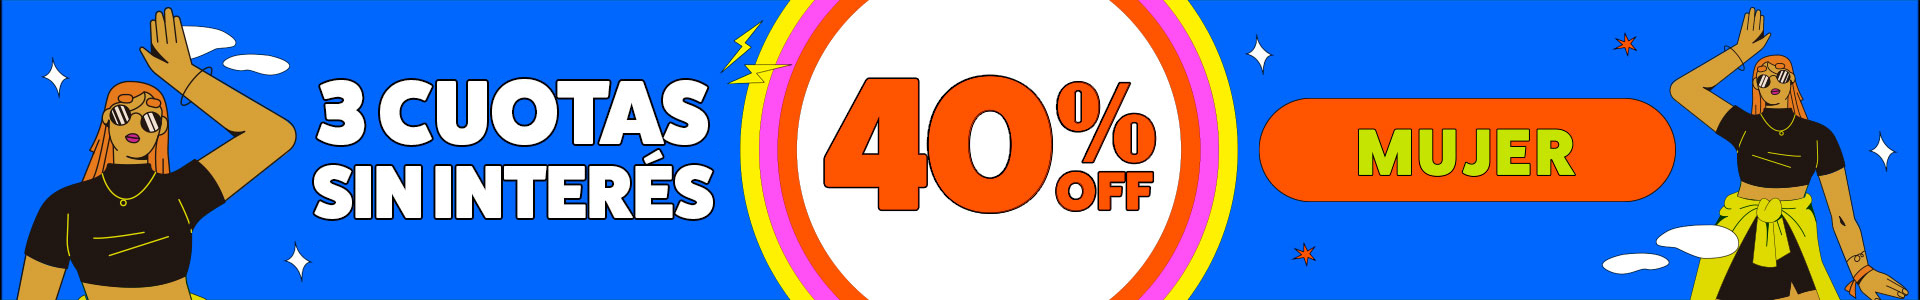 ¡Hasta 40% + 3 cuotas sin interés en calzado, indumentaria y accesorios para mujer! Apurate y aprovechá Hot Sale en Ferreira Sport